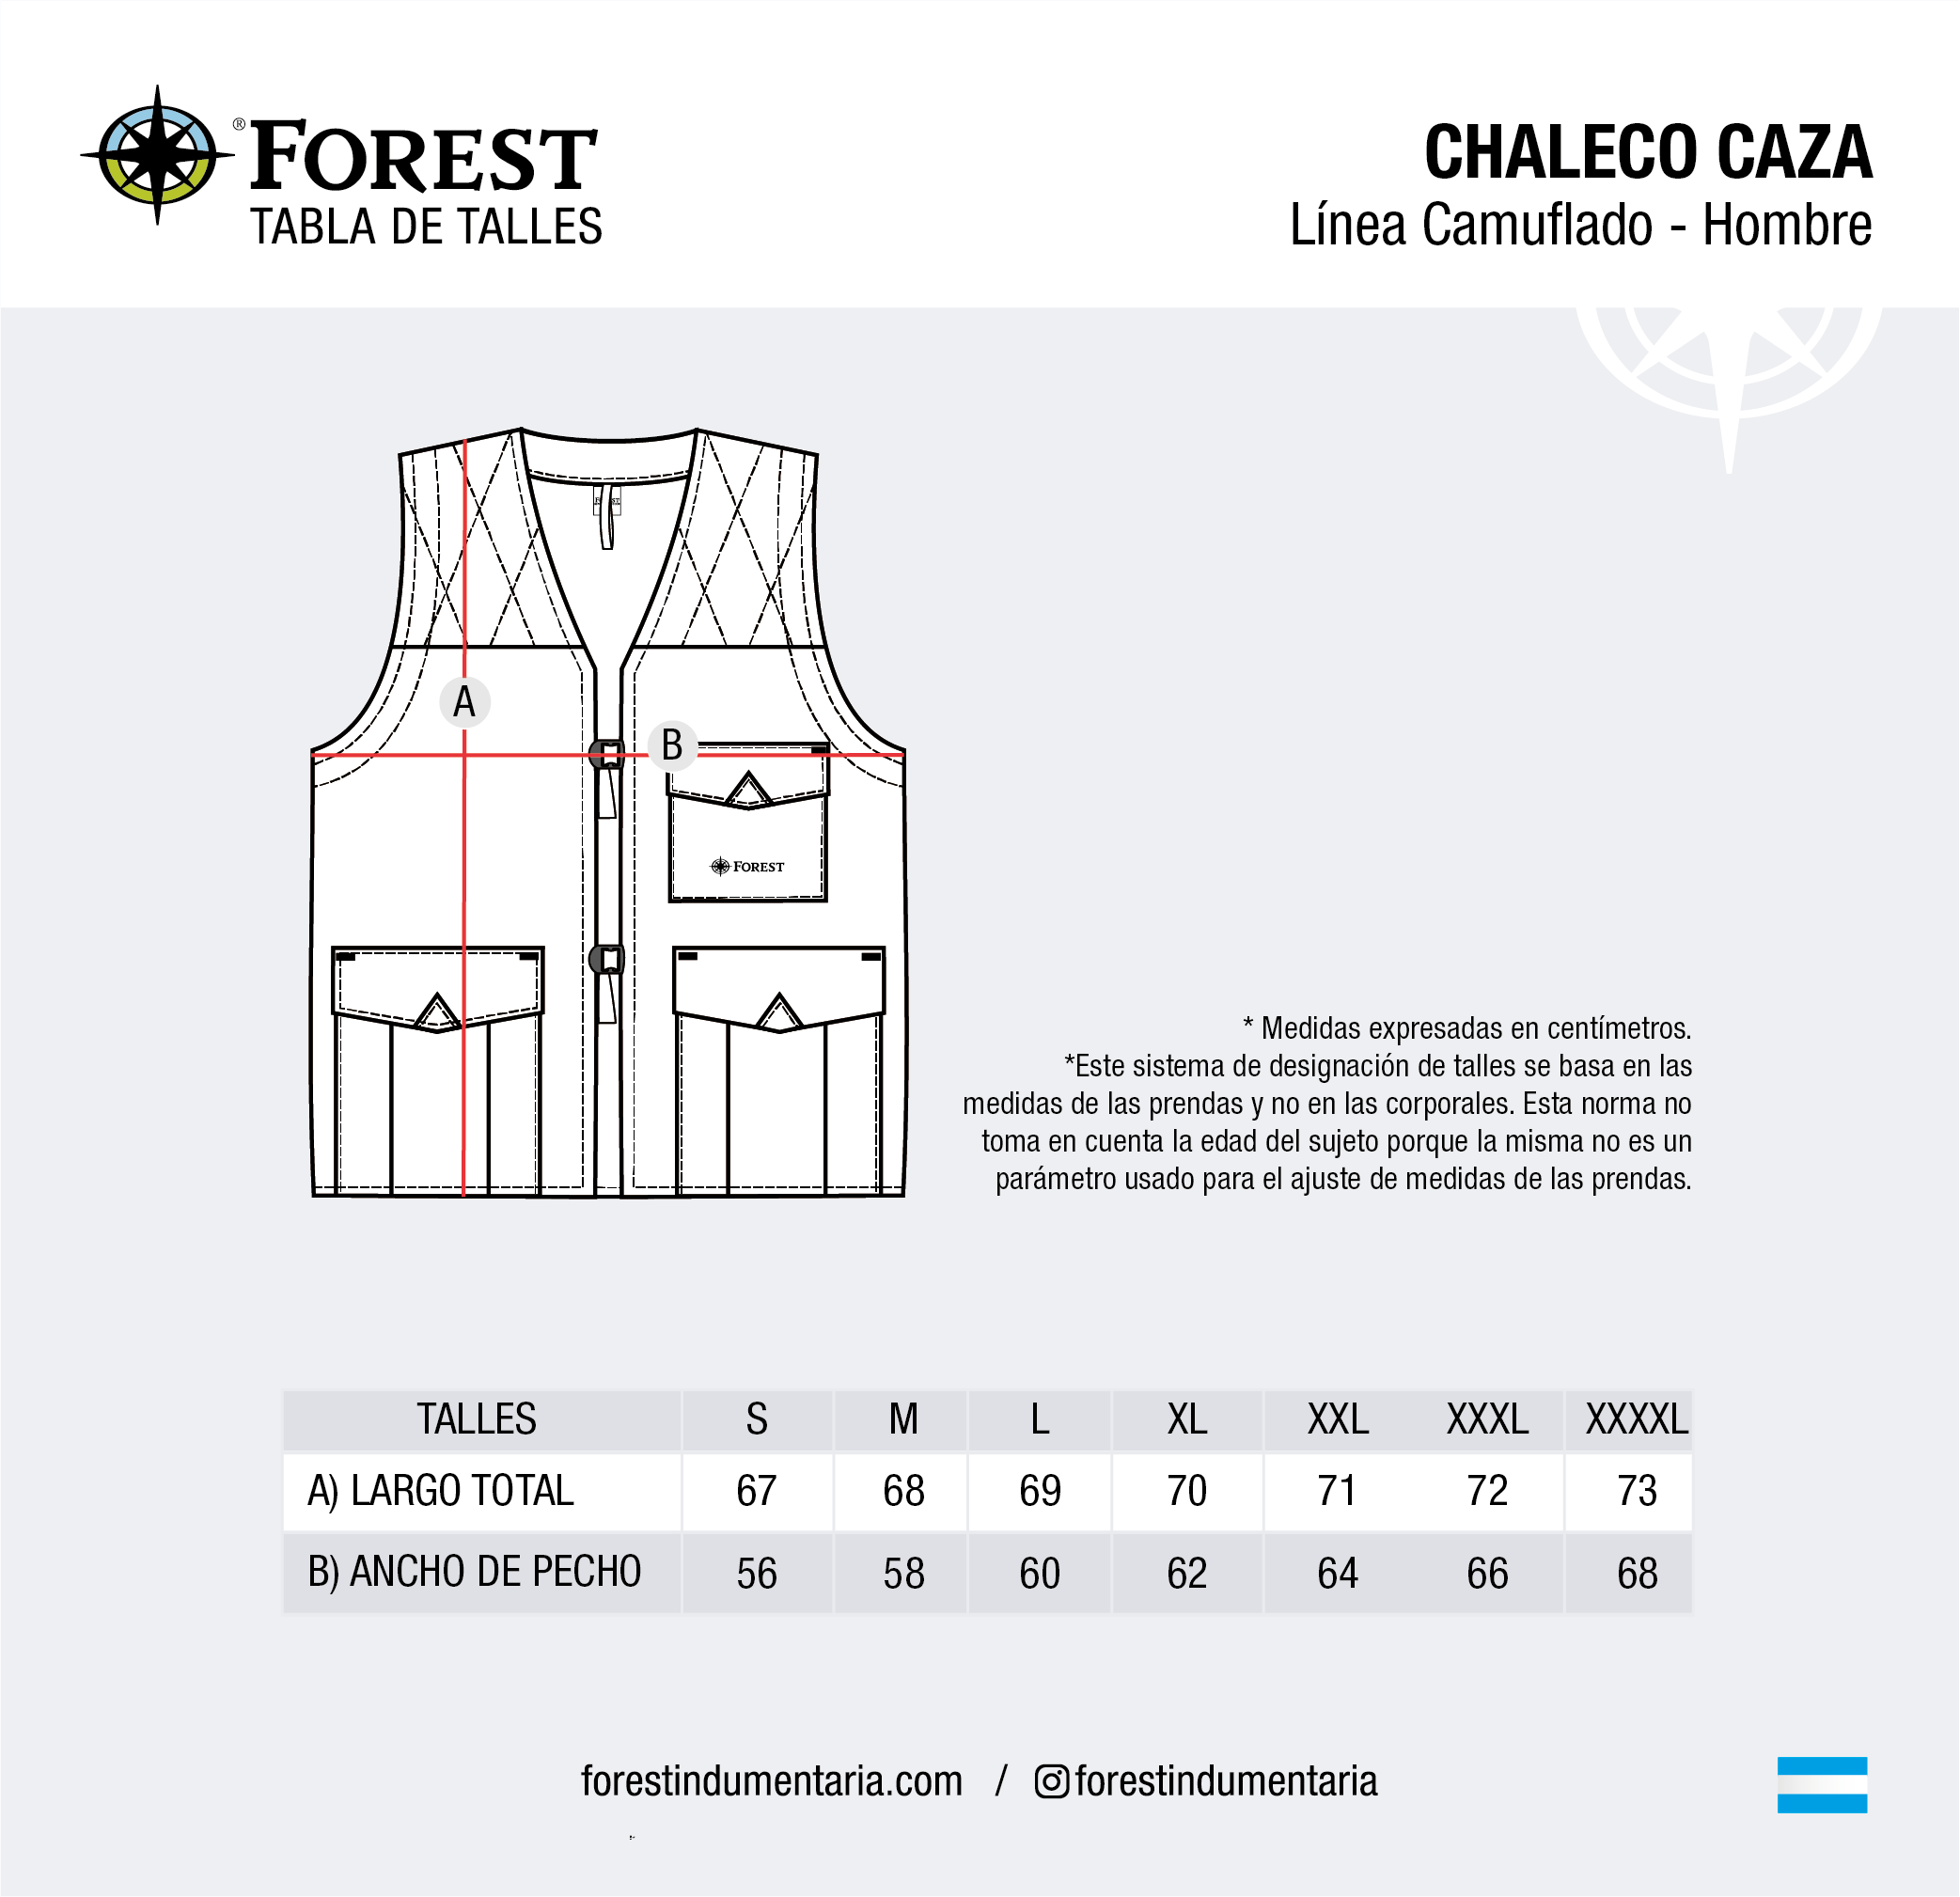 Chaleco de Caza Camuflado - Comprar en FOREST